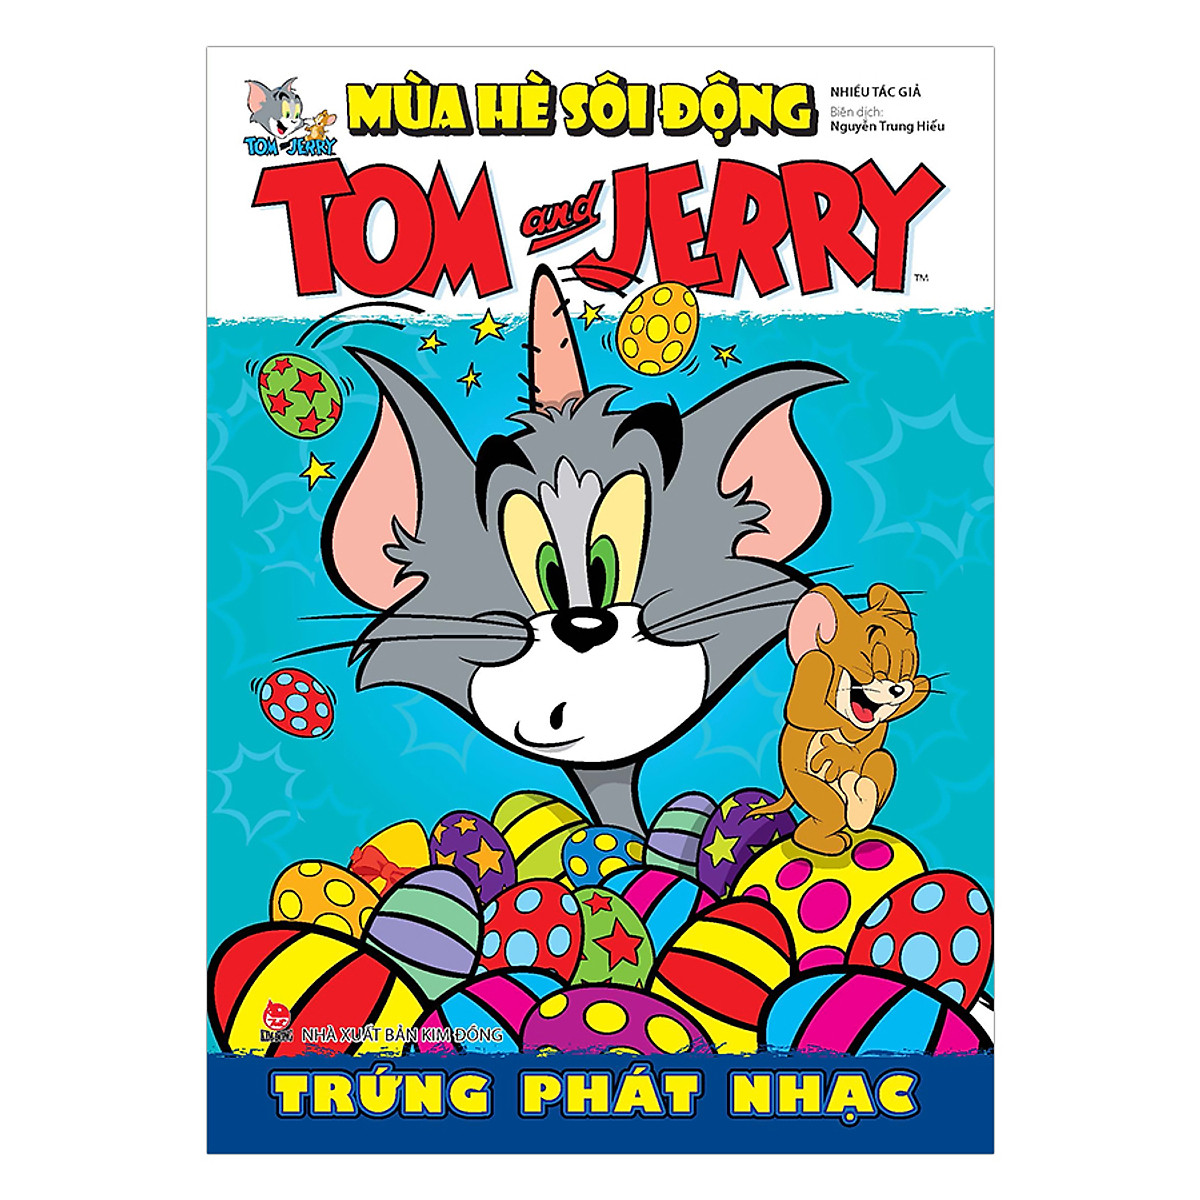 Tom And Jerry Mùa Hè Sôi Động: Trứng Phát Nhạc